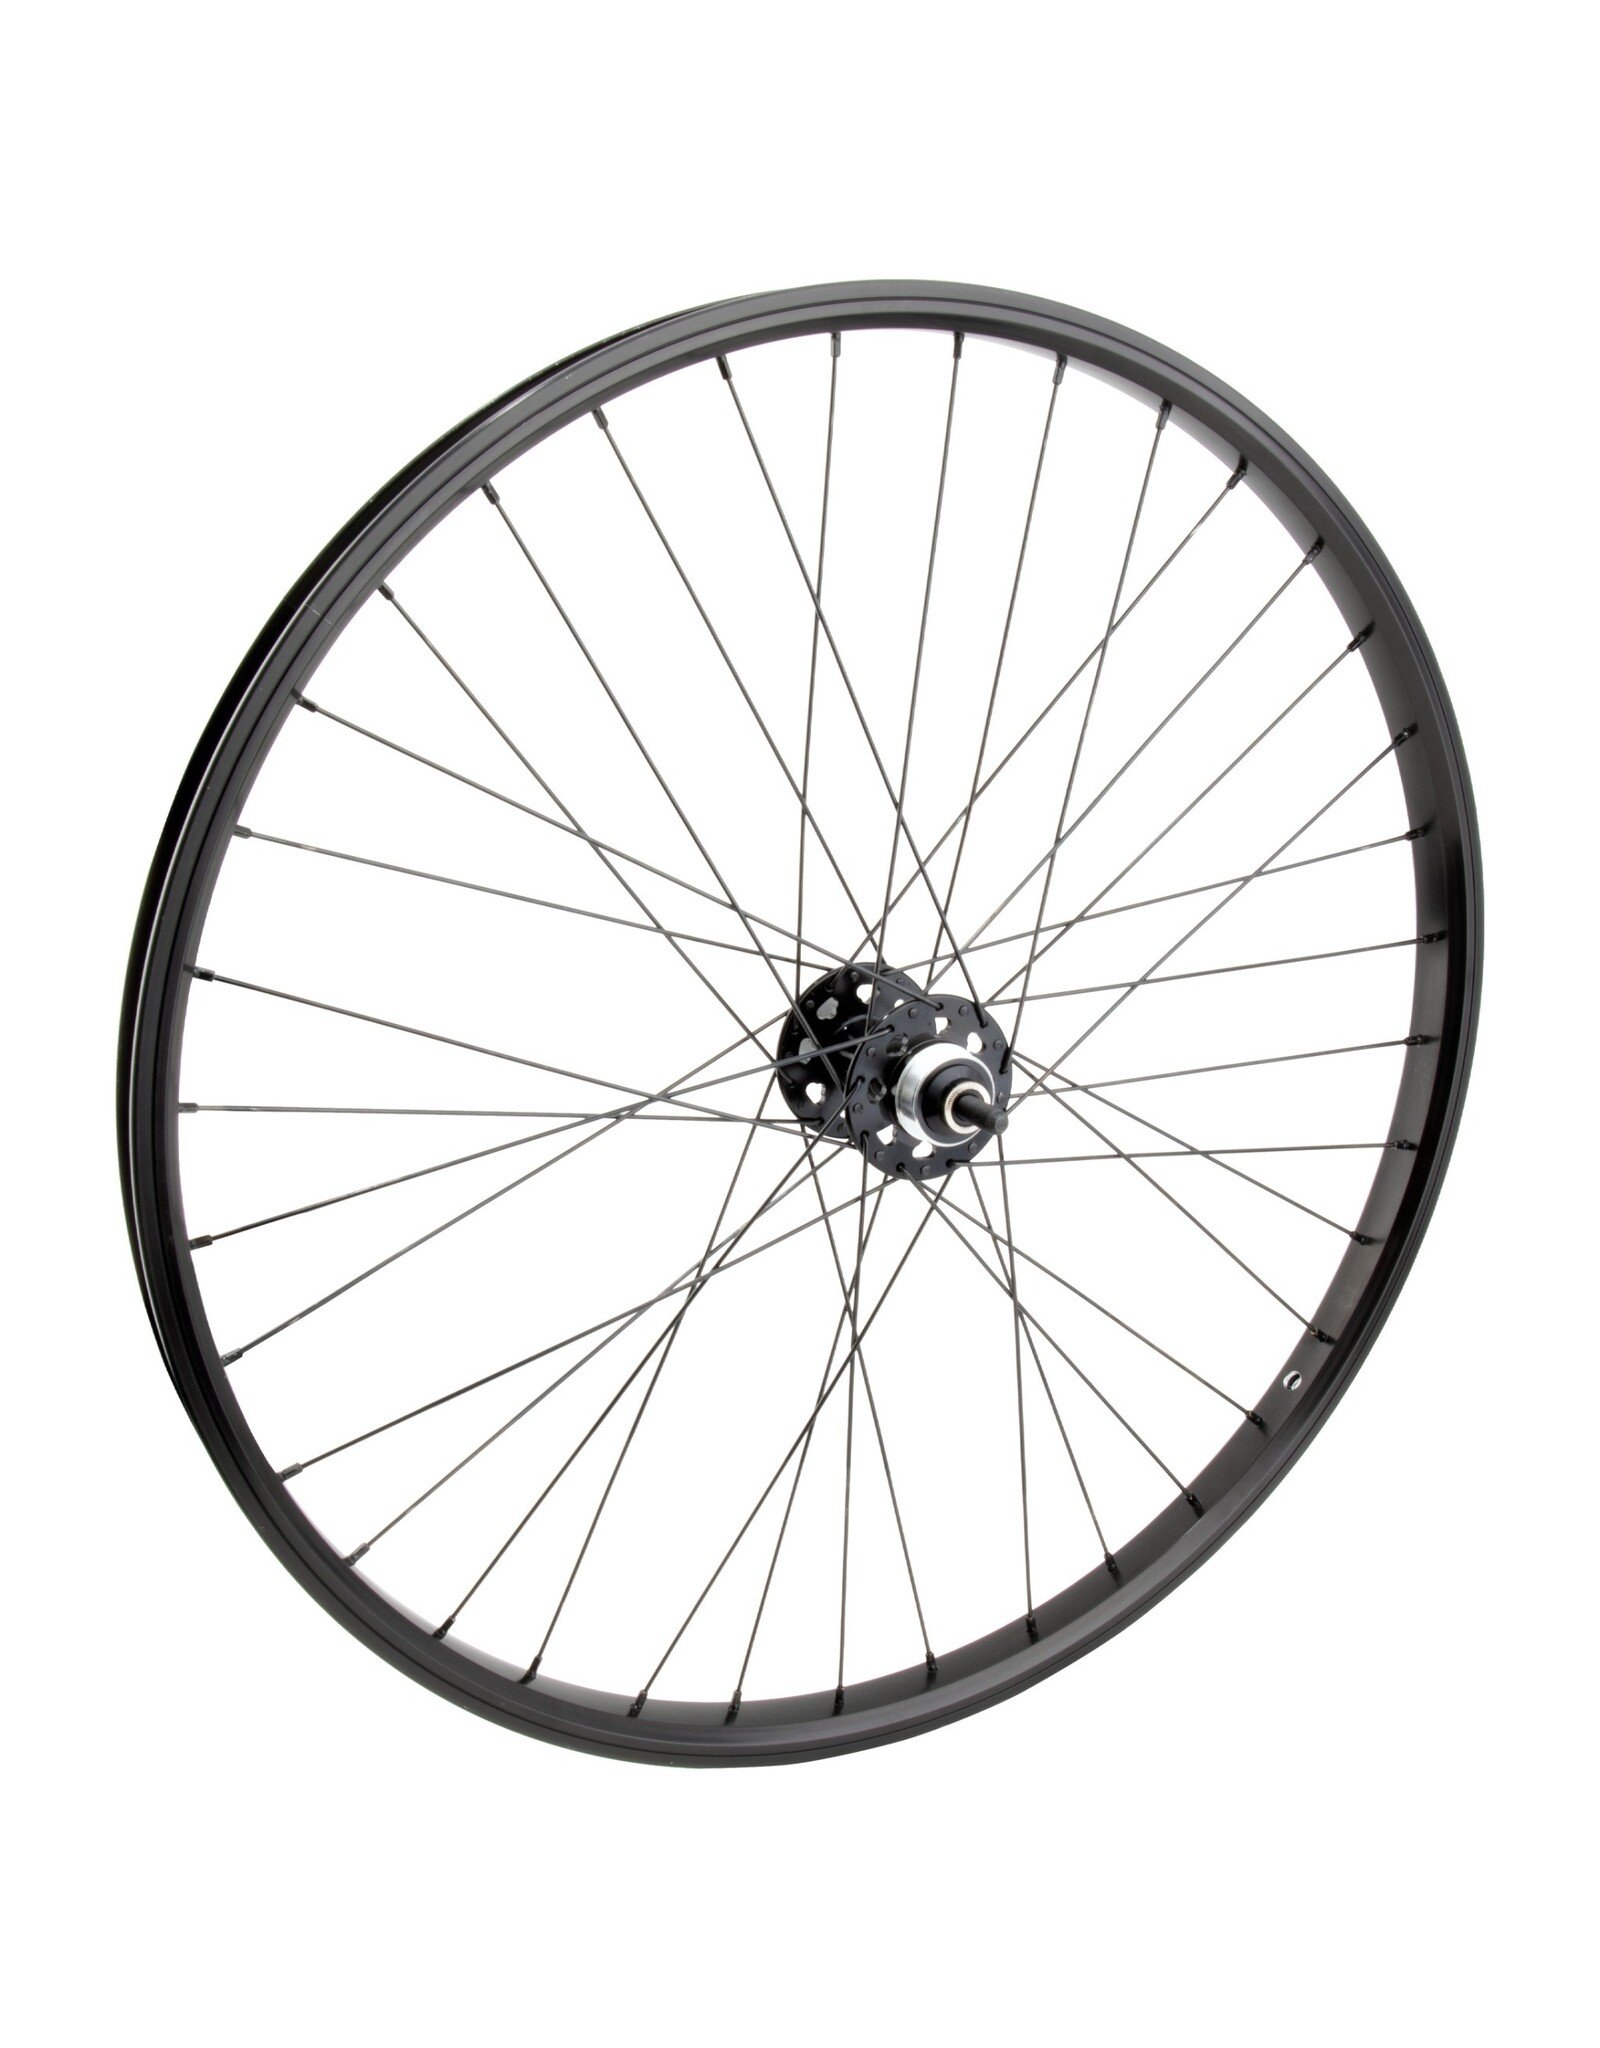 SE BIKES Wheel 26x1.75"  SE Bikes 1-Sp FW 3/8 B/O 110 mm O.L.D.  DT 2.0 mm Black